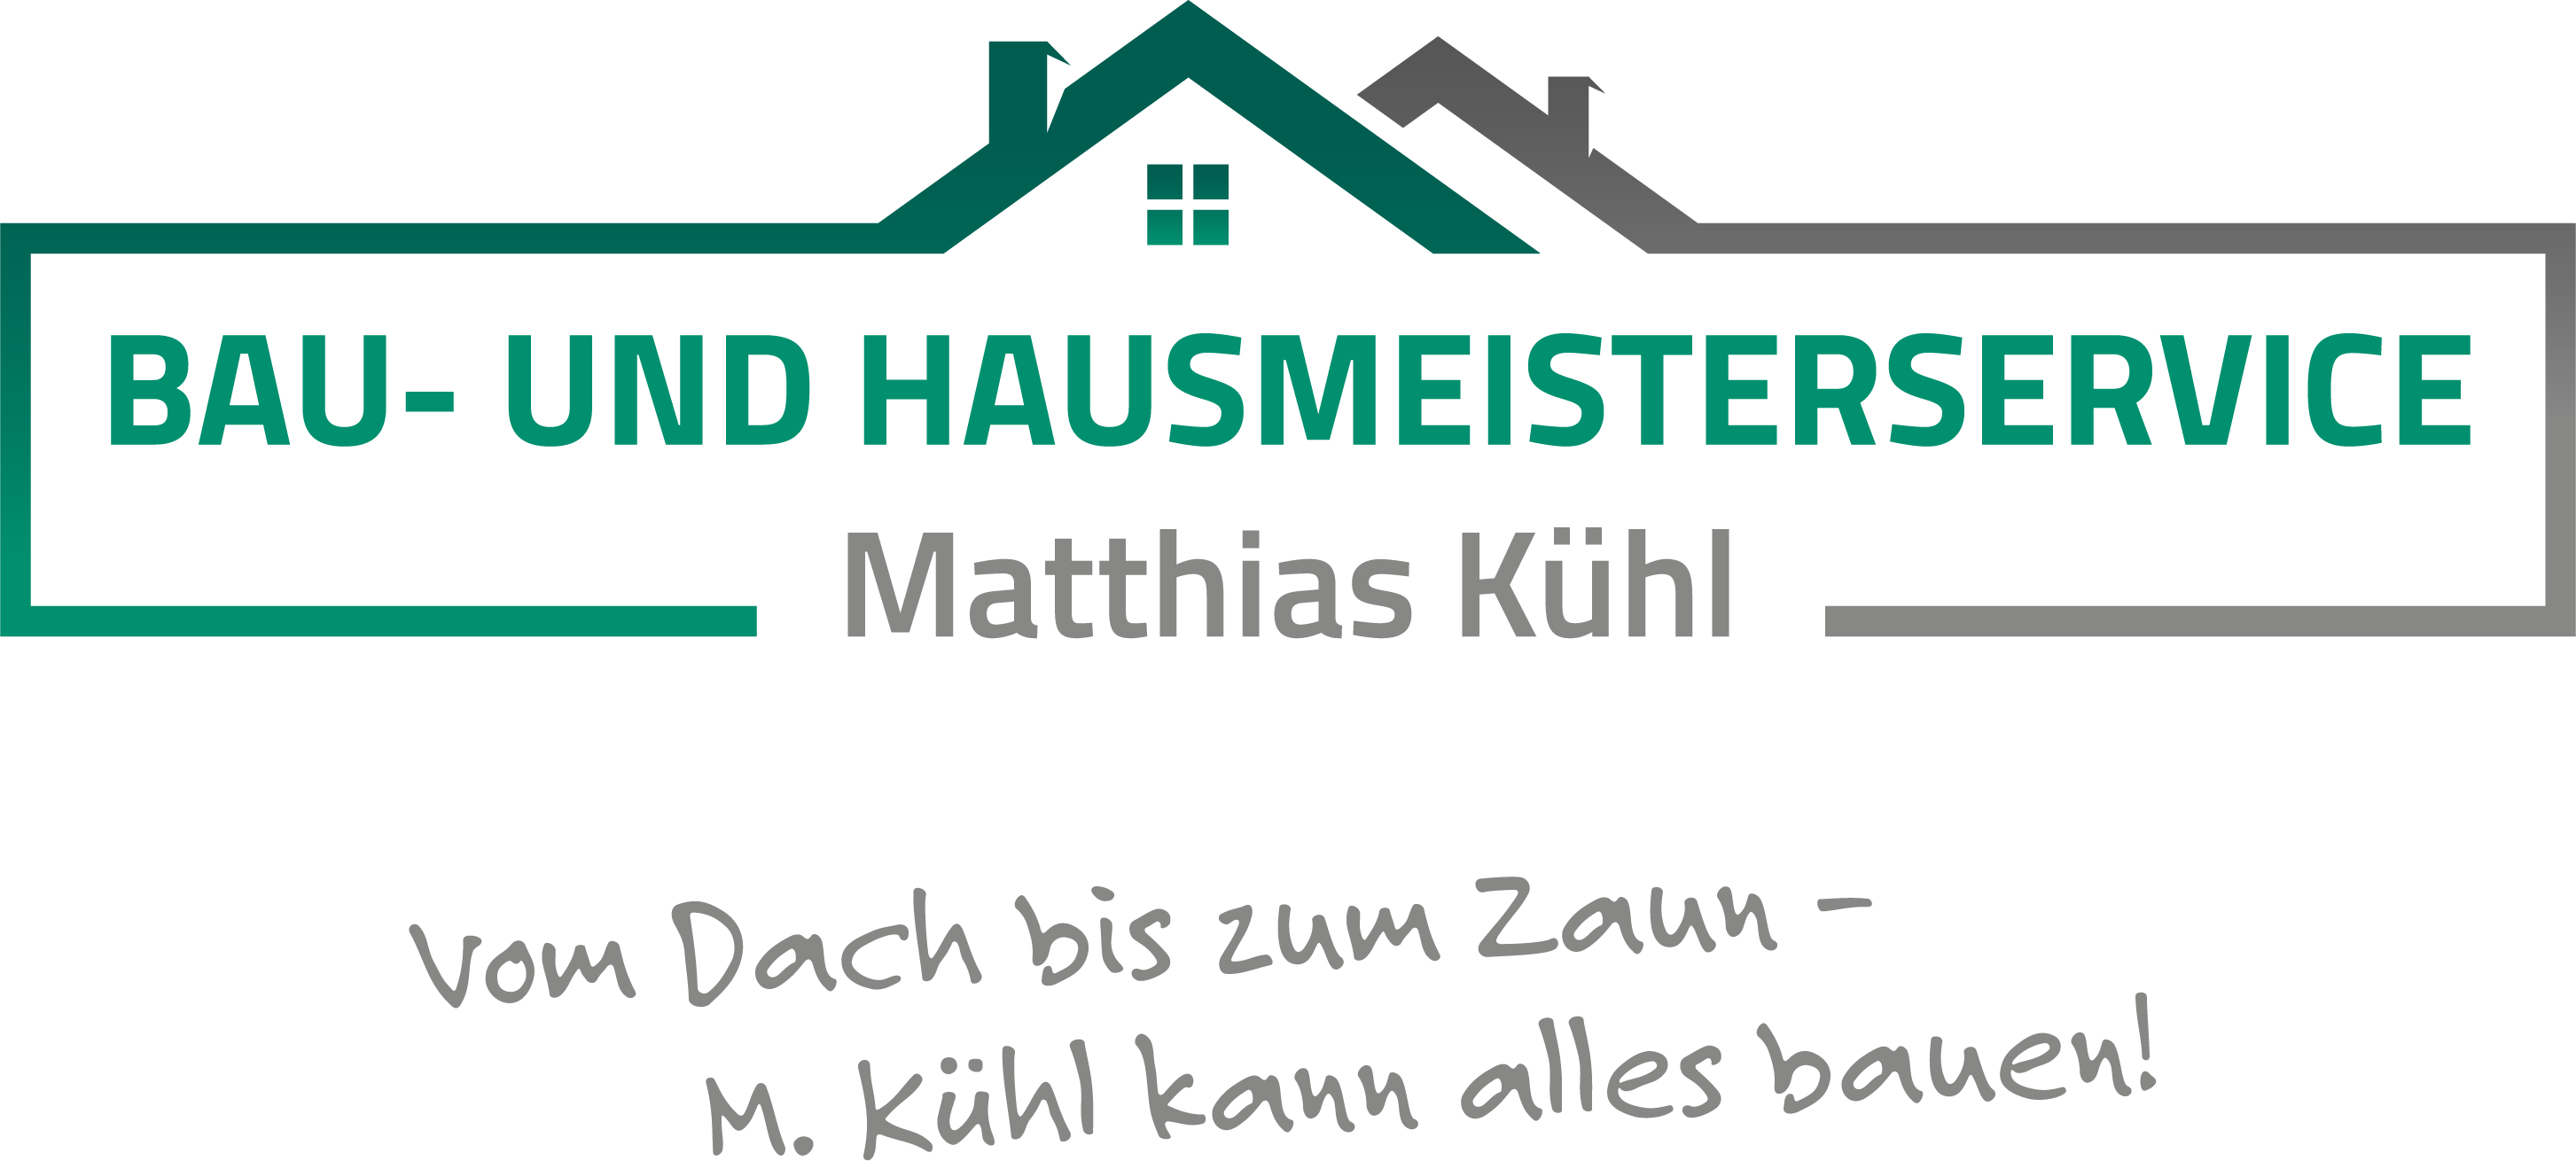 Bau und Hausmeisterservice Matthias Kühl